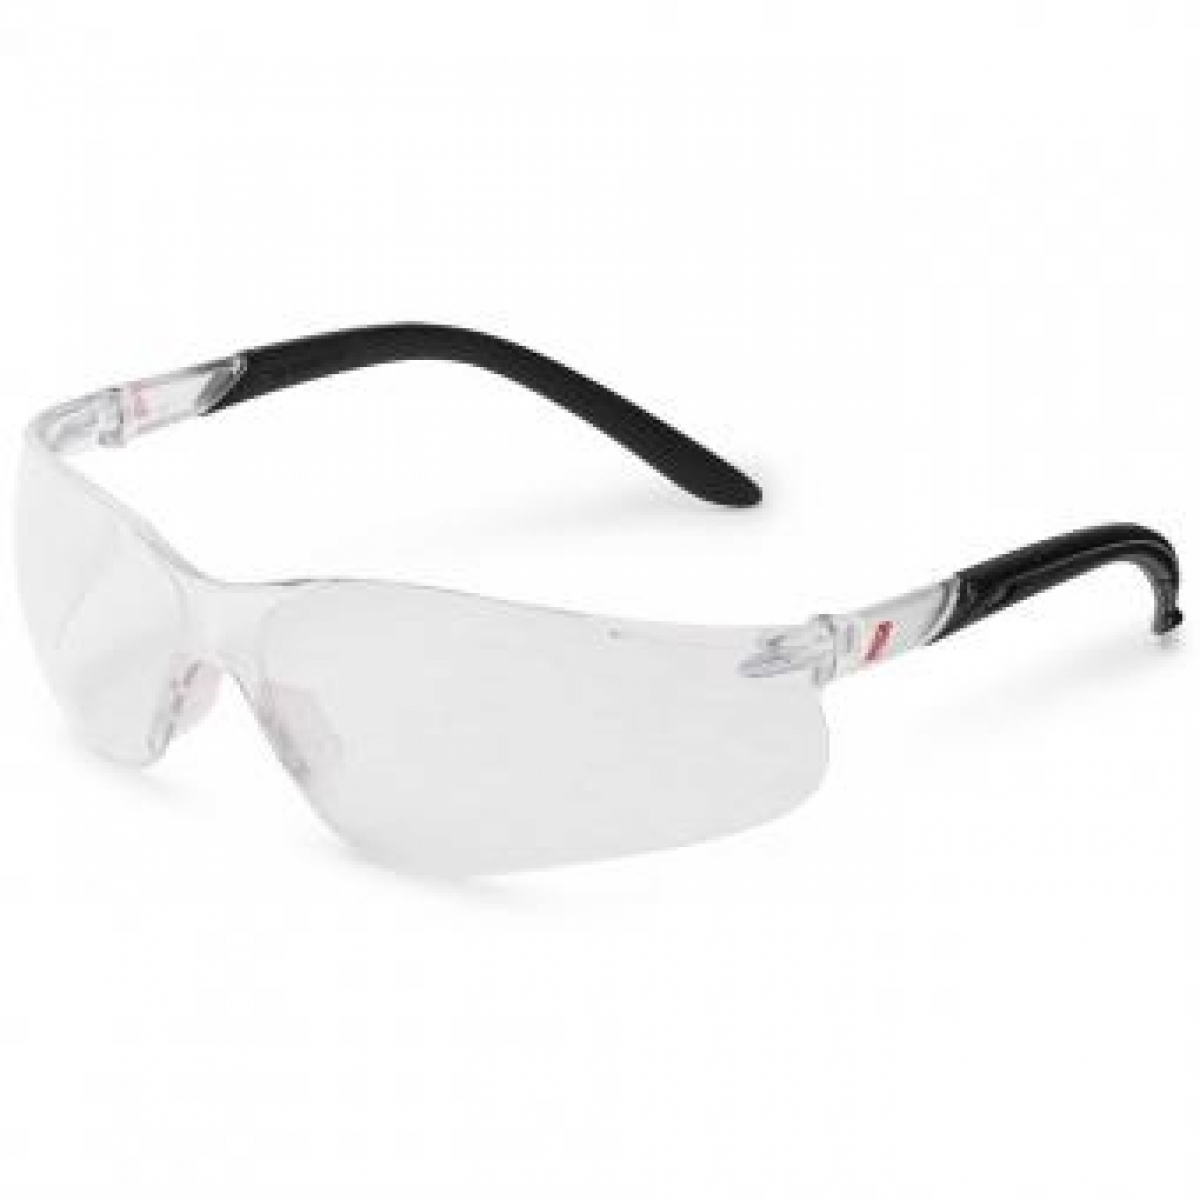 NITRAS VISION PROTECT, Schutzbrille, Tragkrper schwarz / transparent, Sichtscheiben klar, EN 166